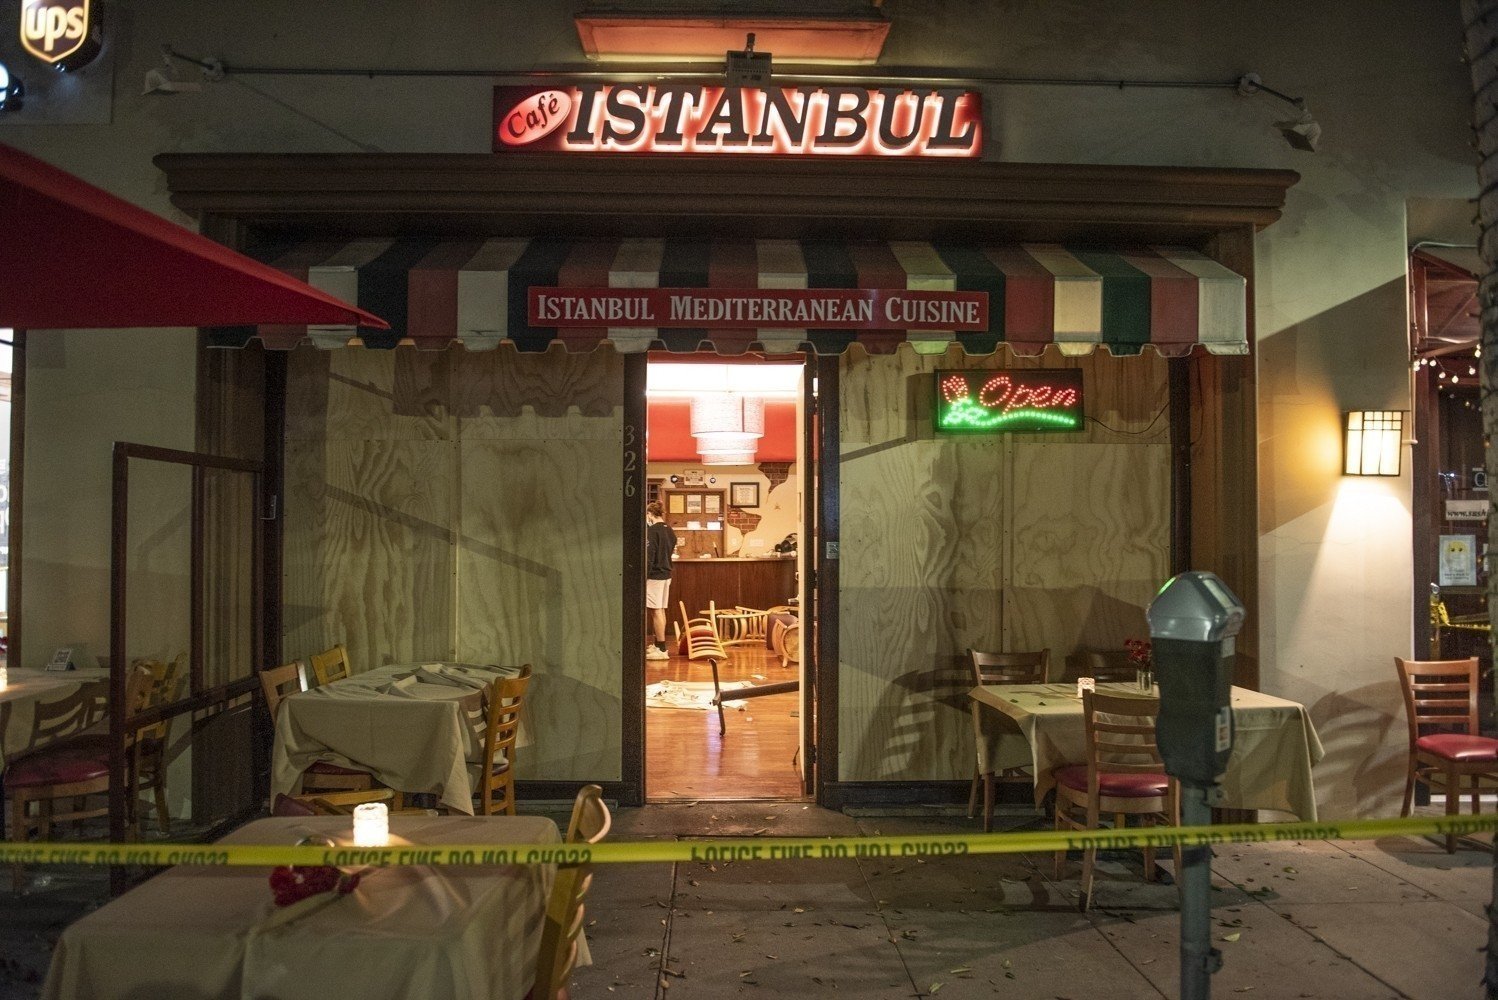 Cafe Istanbul in Beverly Hills, California, U.S., Nov. 4, 2020. (IHA Photo)